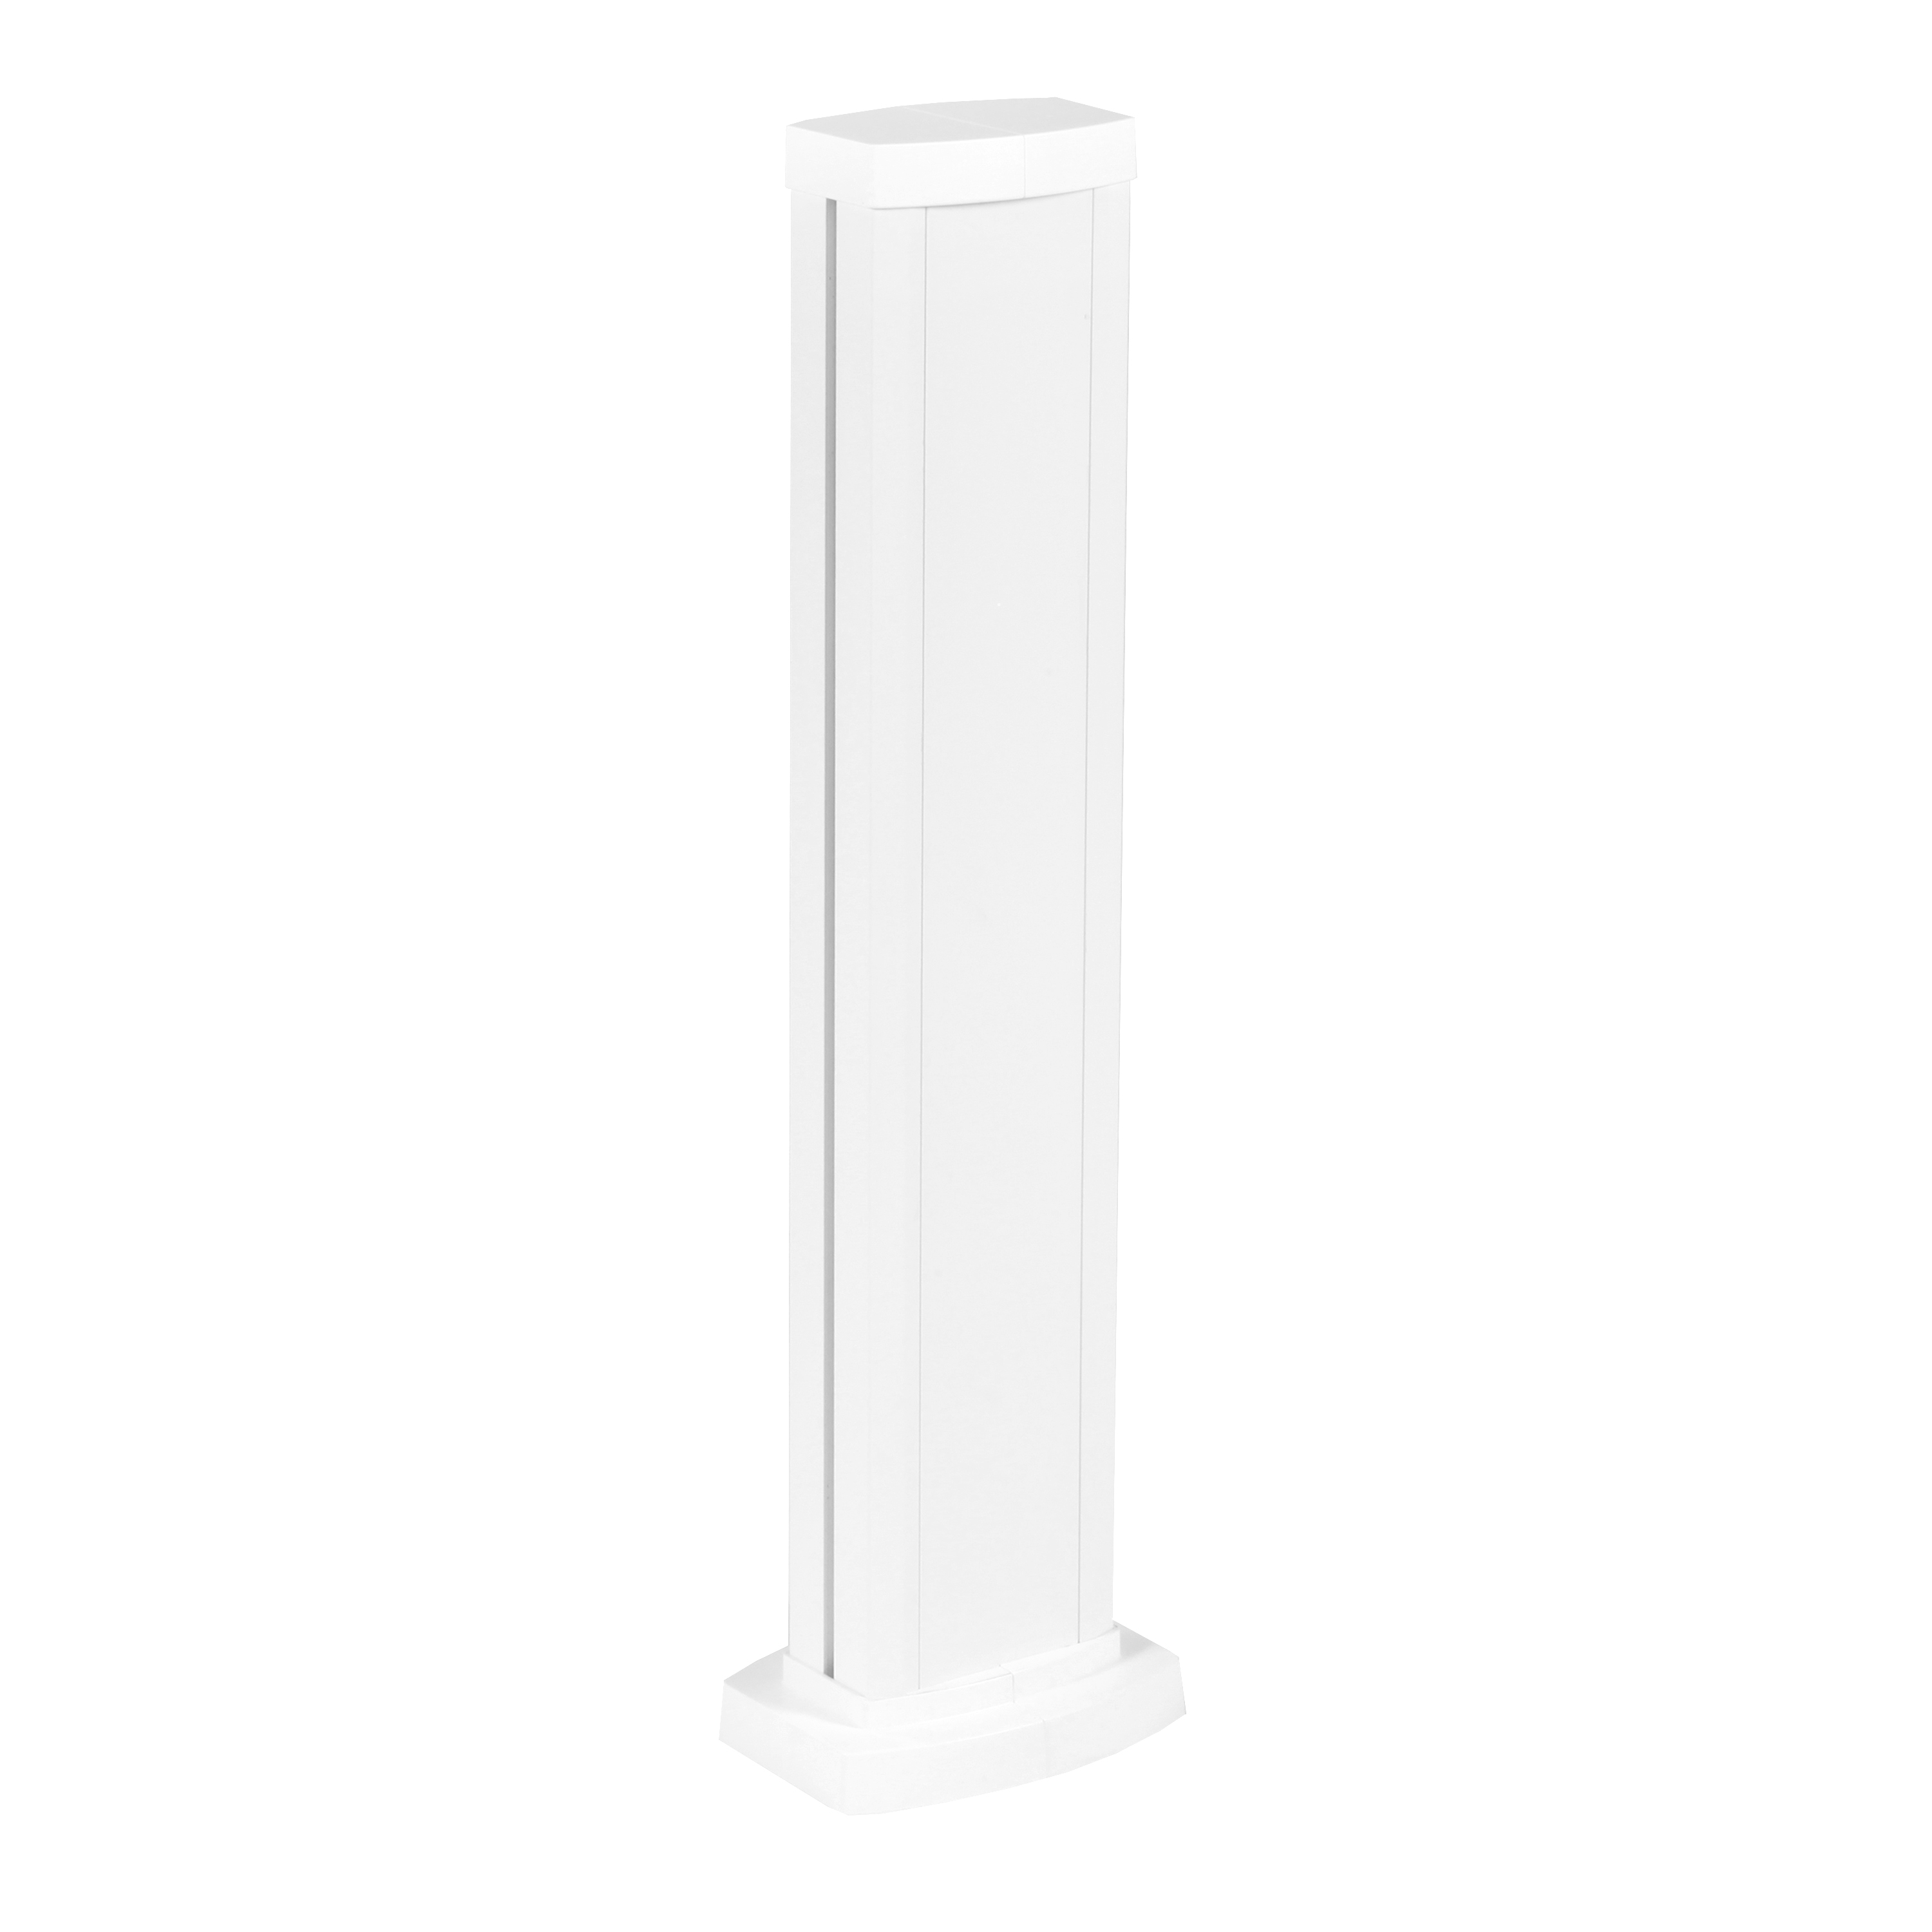 Legrand Универсальная мини-колонна алюминиевая с крышкой из алюминия 1 секция, высота 0,68 метра, цвет белый